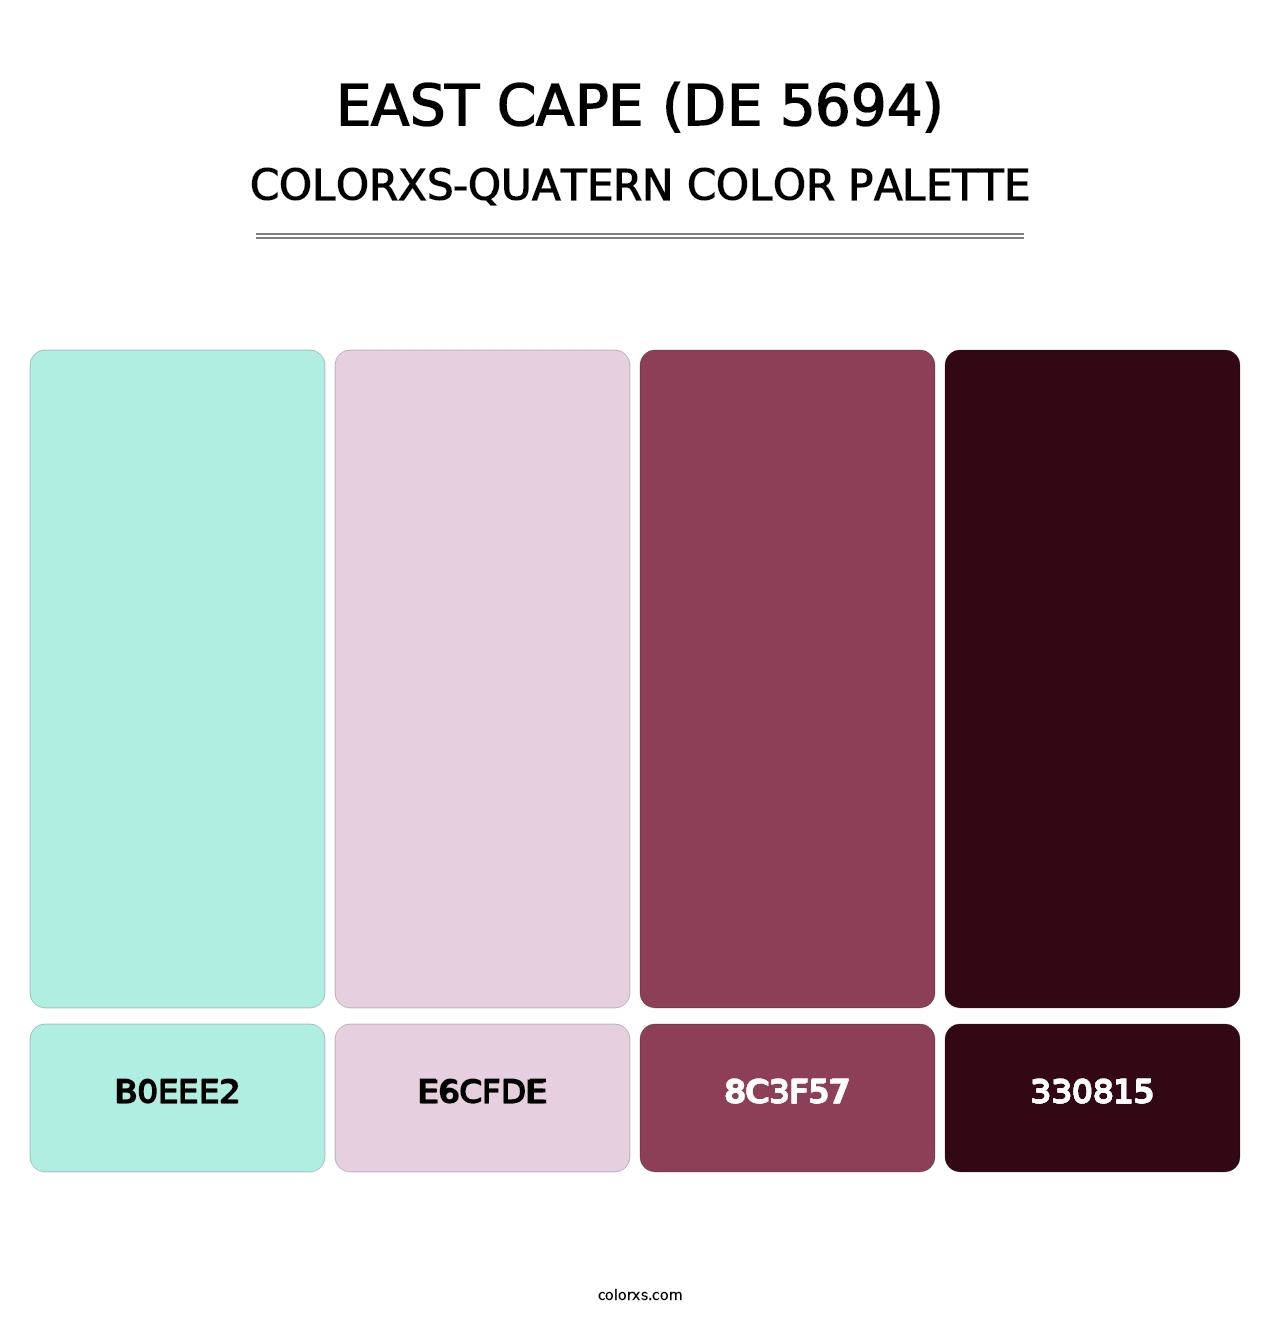 East Cape (DE 5694) - Colorxs Quatern Palette